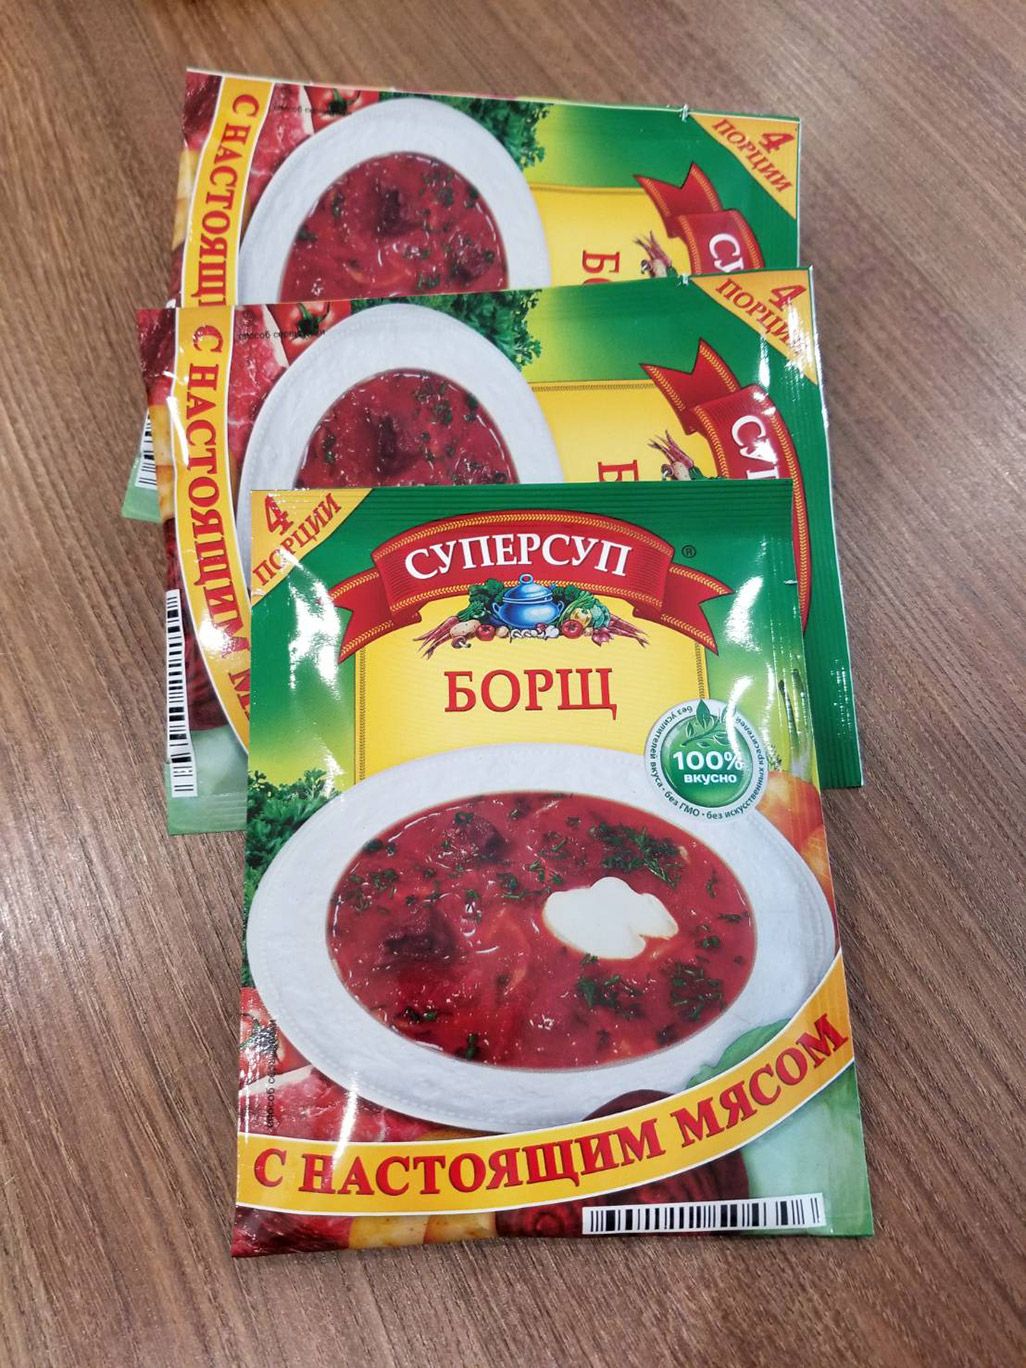 モスクワで売られている袋入りのインスタントボルシチ